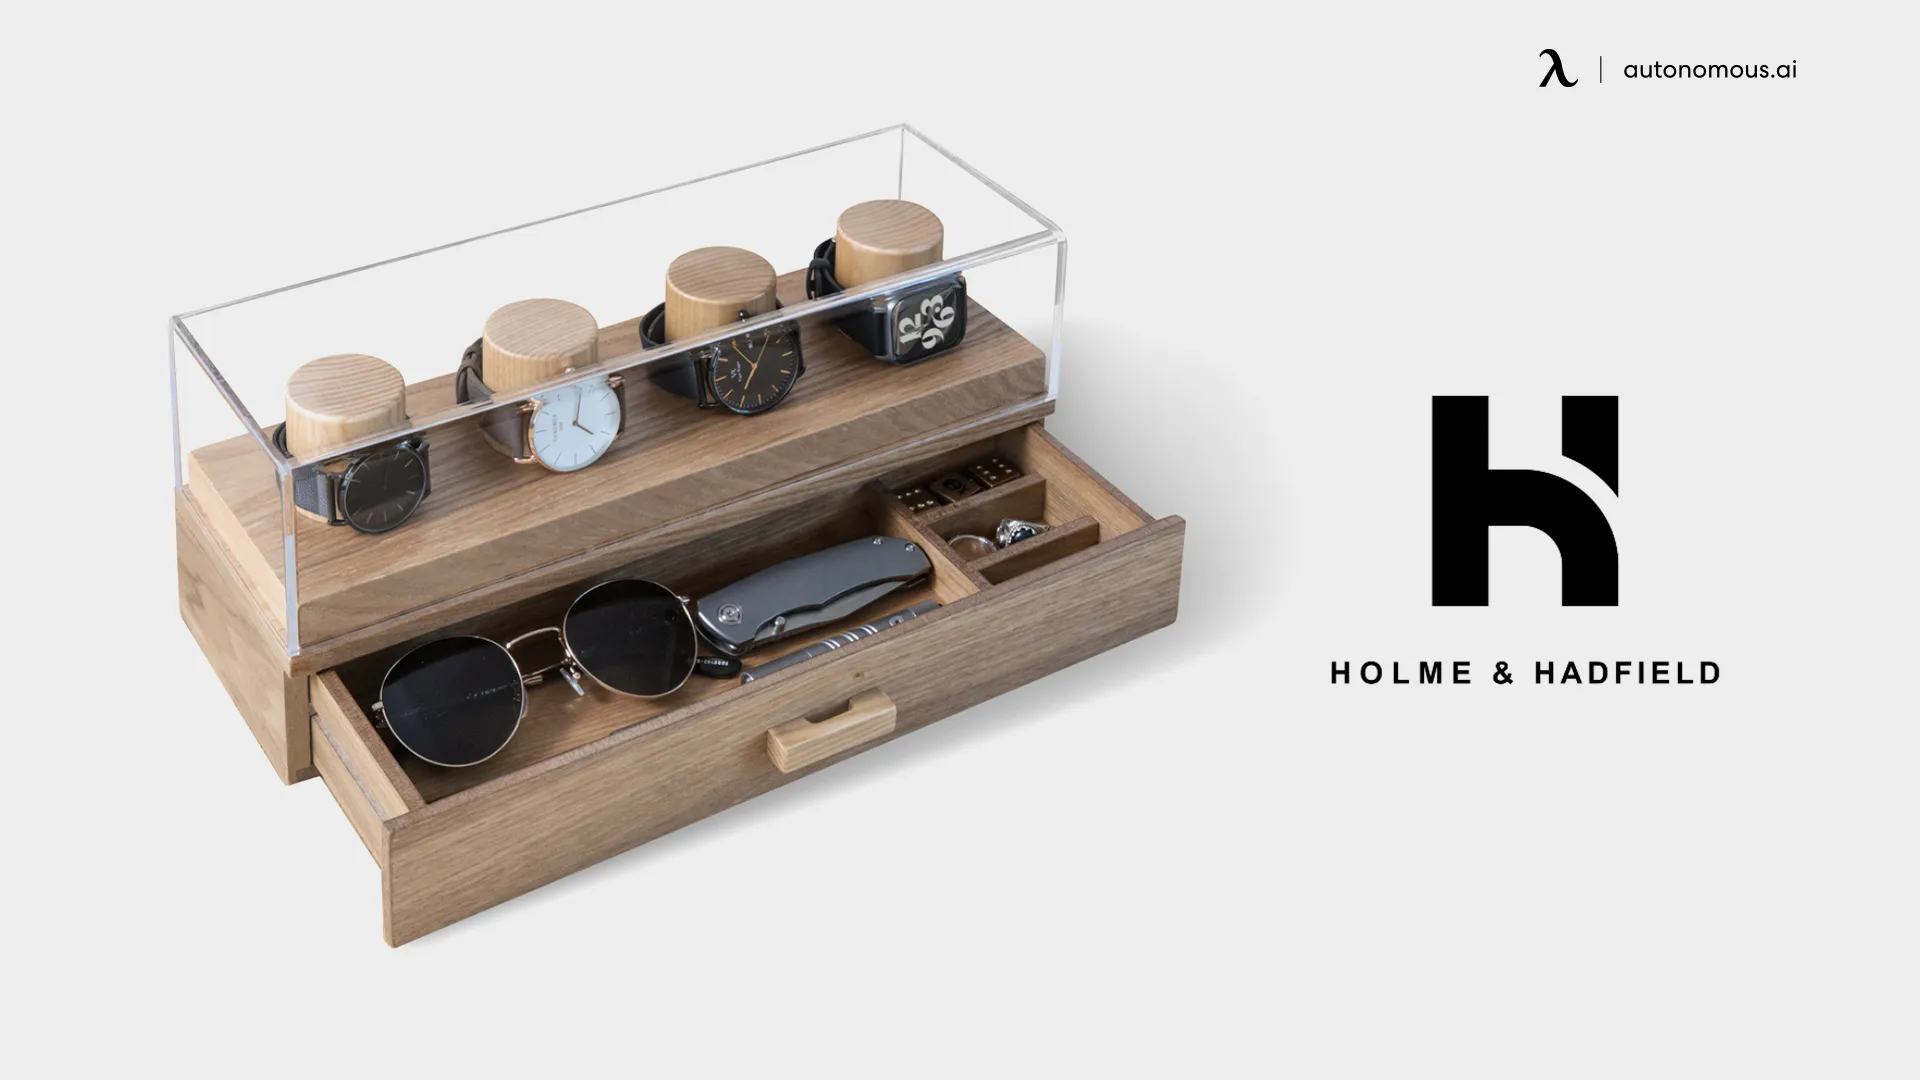 Holme & Hadfield wood watch case